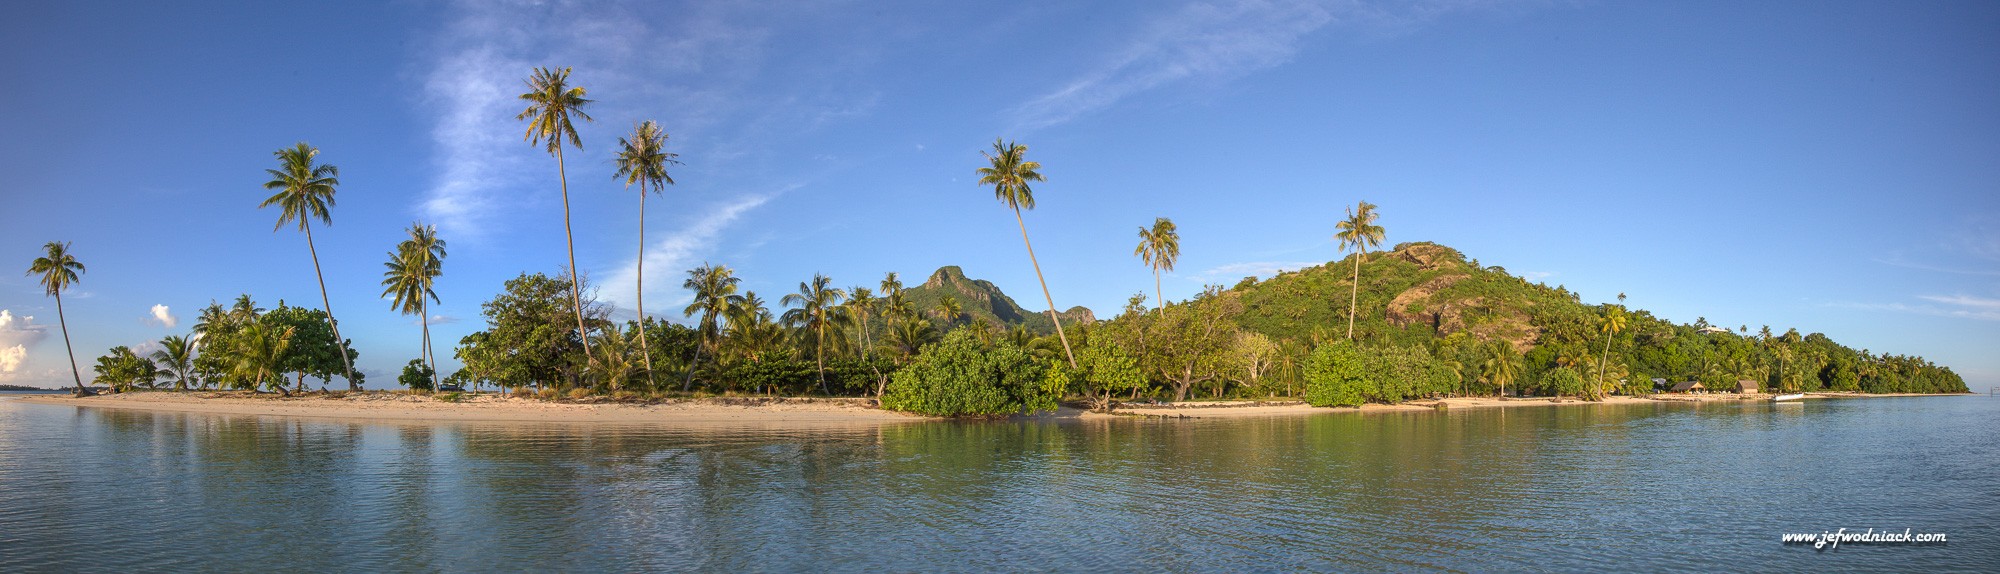 île de Maupiti, photographe Jef Wodniack.